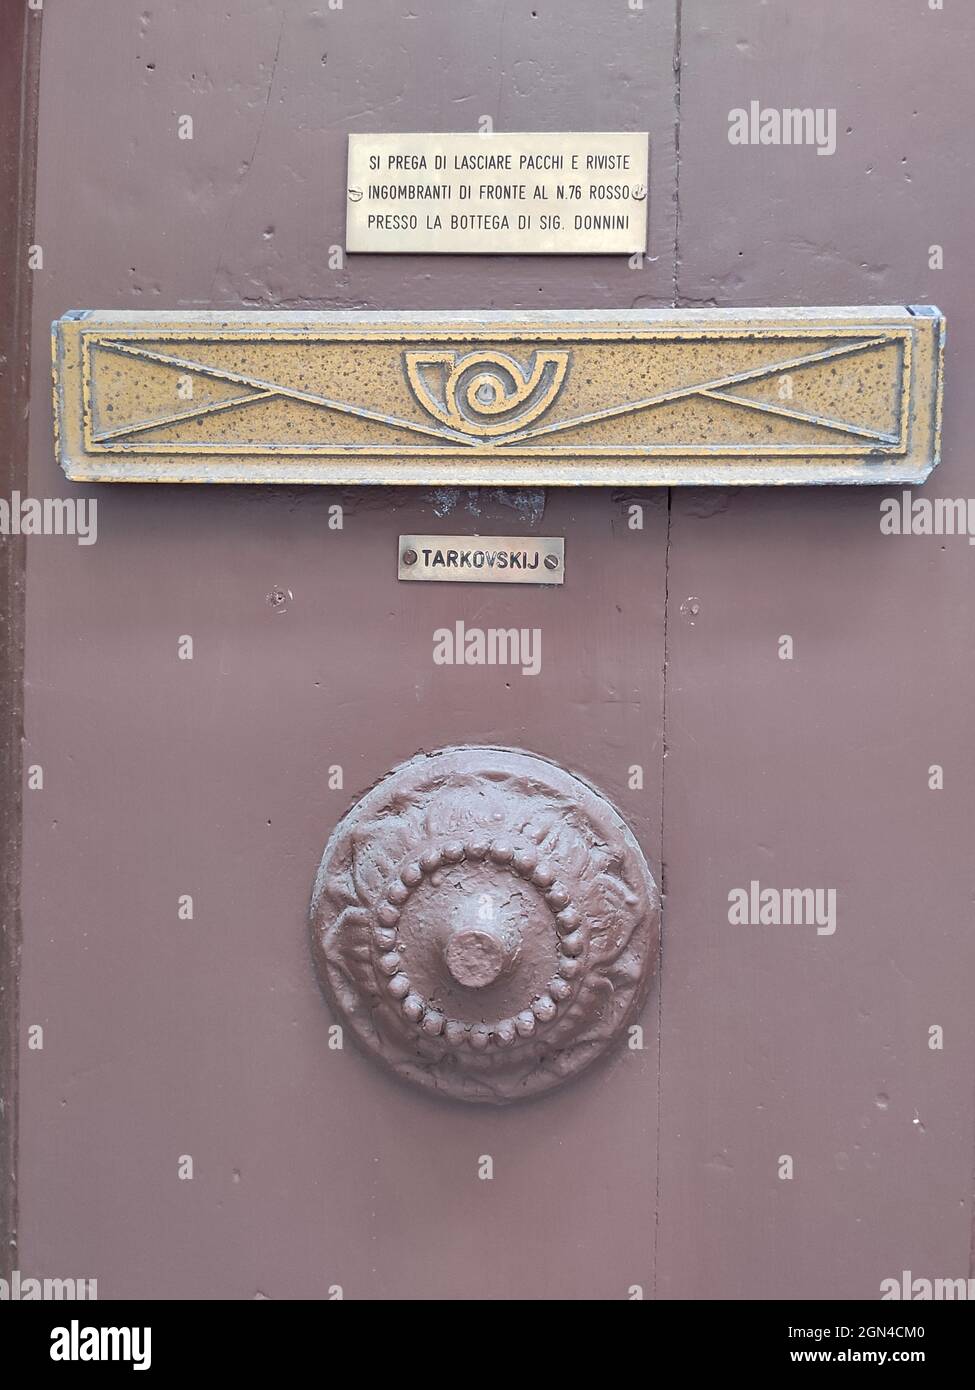 Andrei Tarkovsky house, Florence, September 2021 Stock Photo